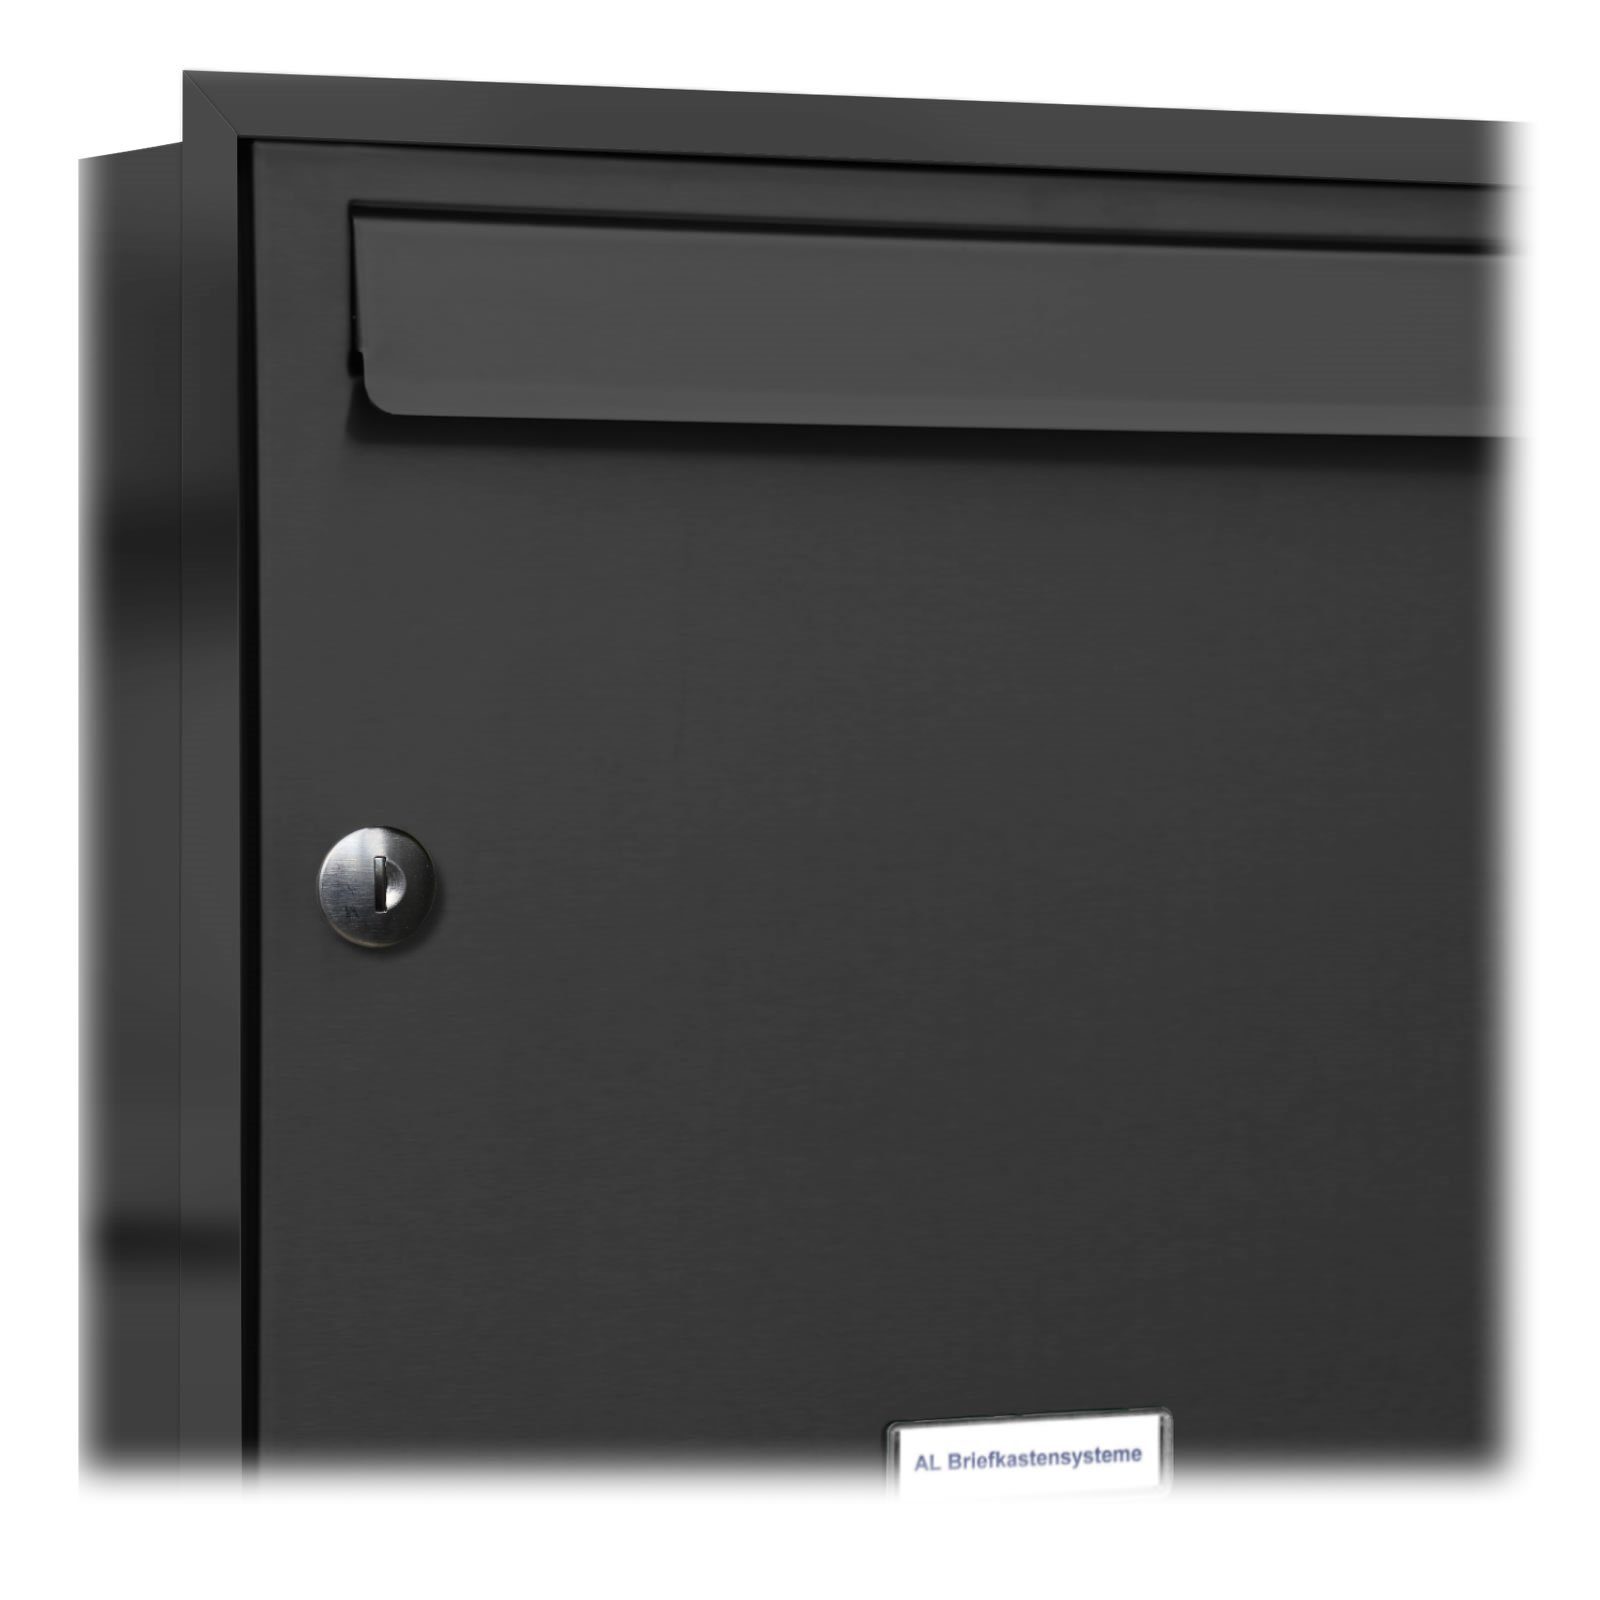 Klingel Briefkastensysteme er Briefkasten Premium Unterputz AL Wandbriefkasten anthrazit 2 2x1 Anlage A4